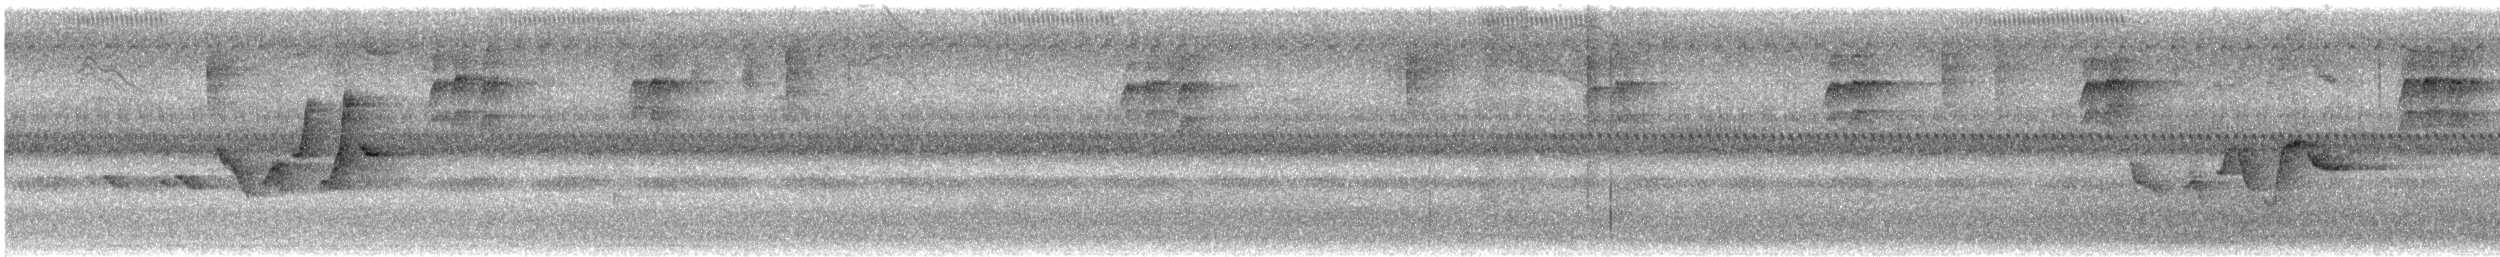 Paruline à capuchon - ML481601151